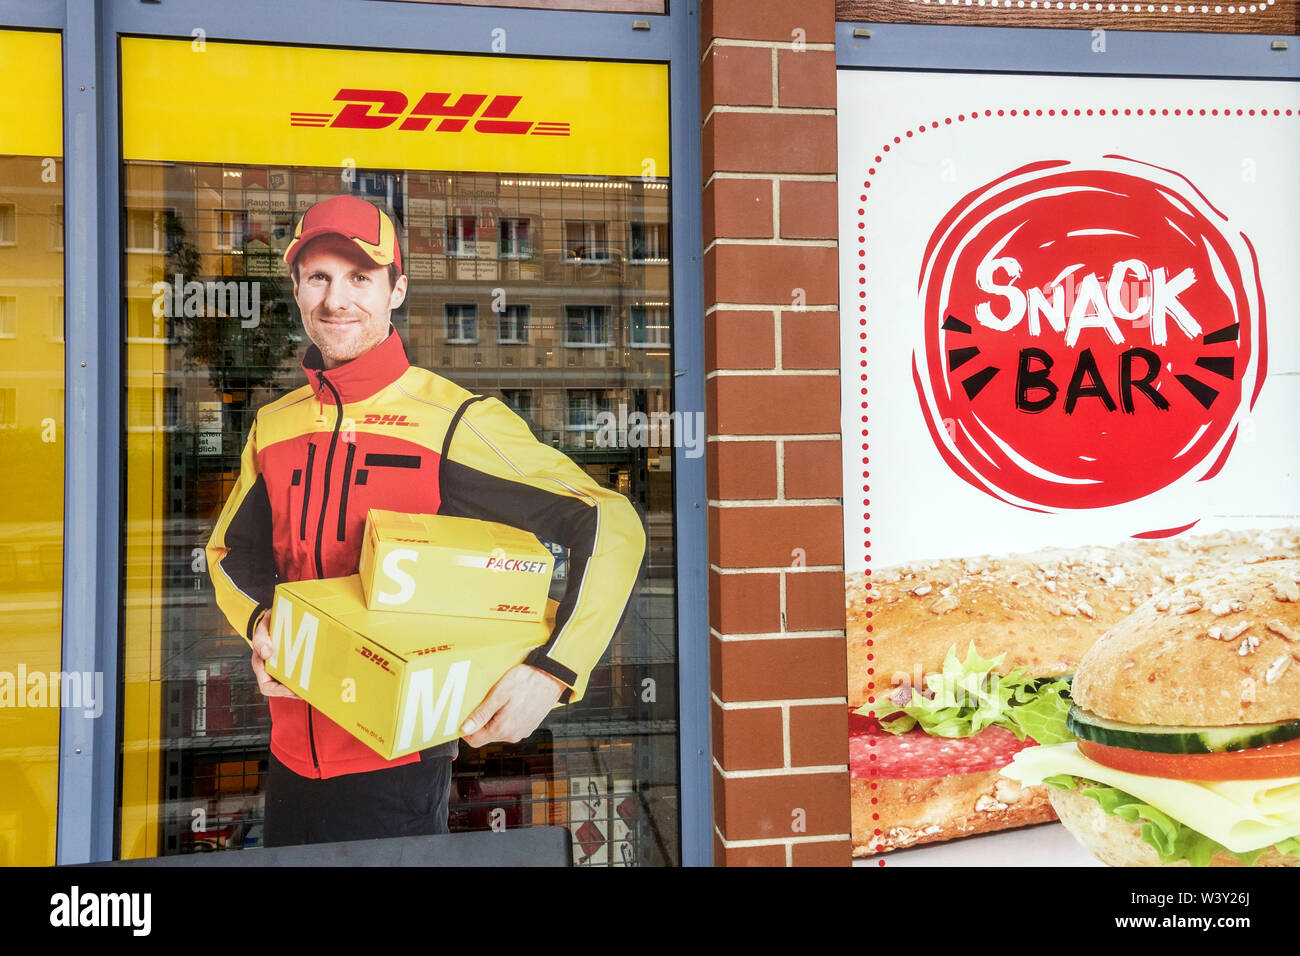 DHL Delivery man, une publicité sur DHL office shop, snack Bar dans la rue Dresde Allemagne Banque D'Images